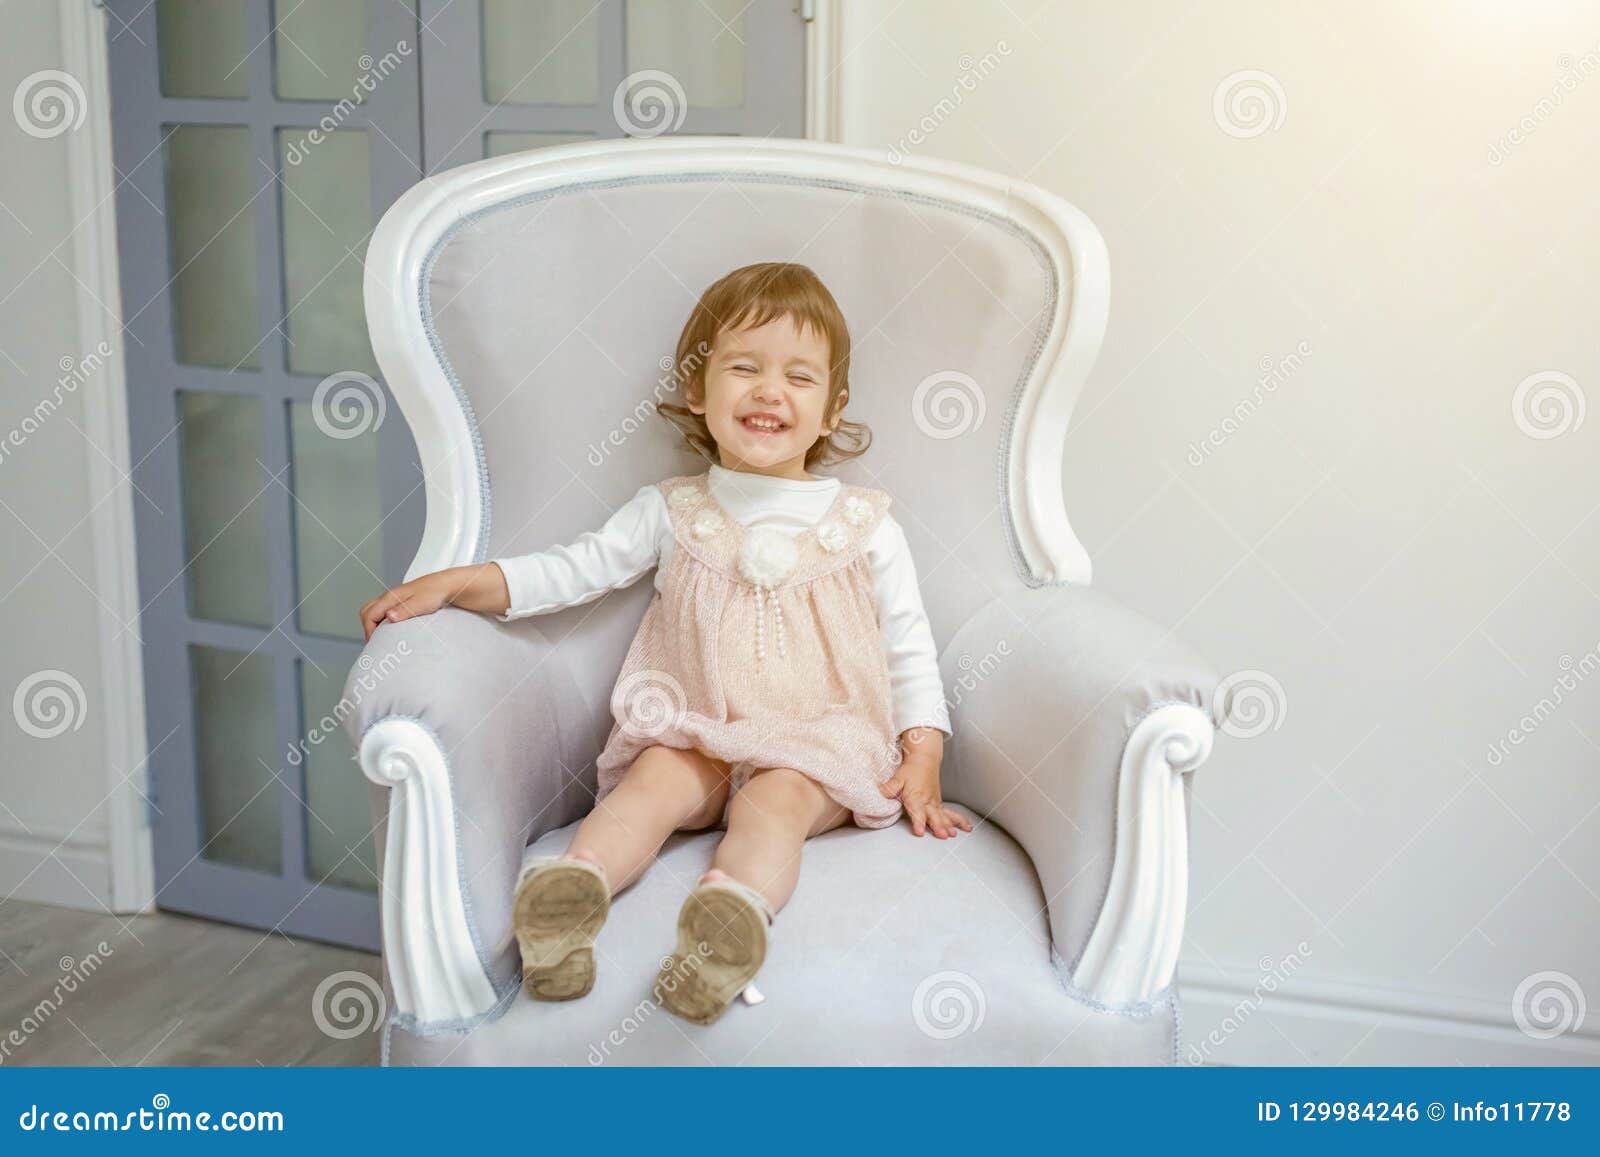 chair for little girl room